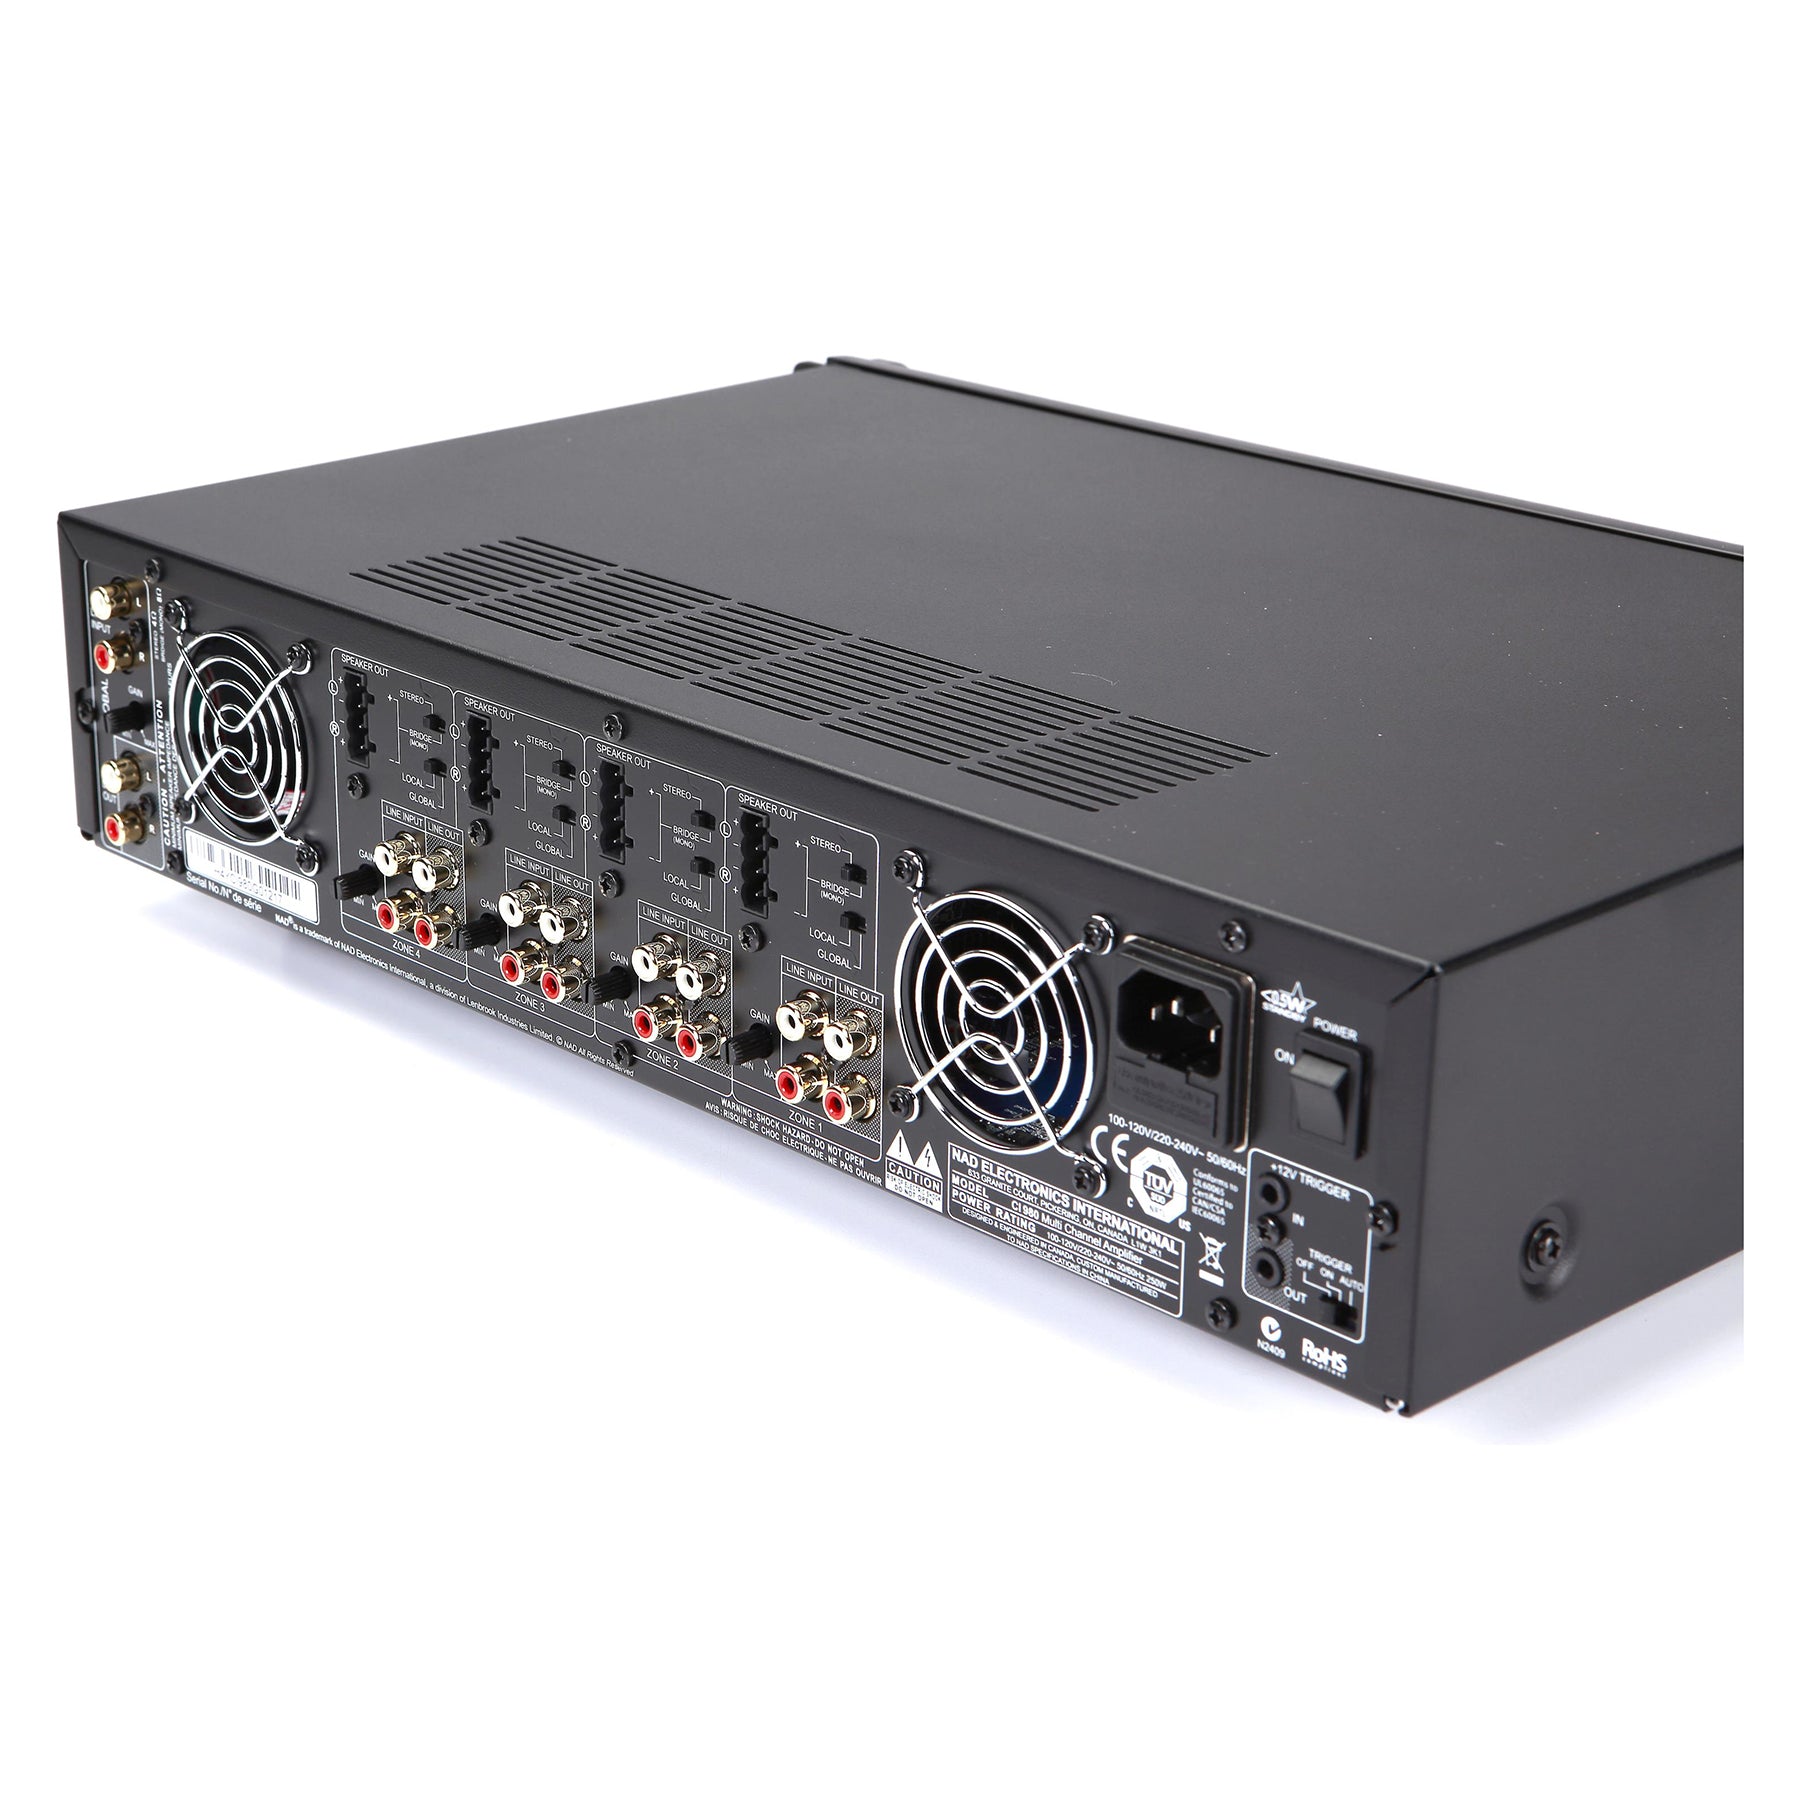 NAD CI 980 8-Channel / 4-Zone Power amplier